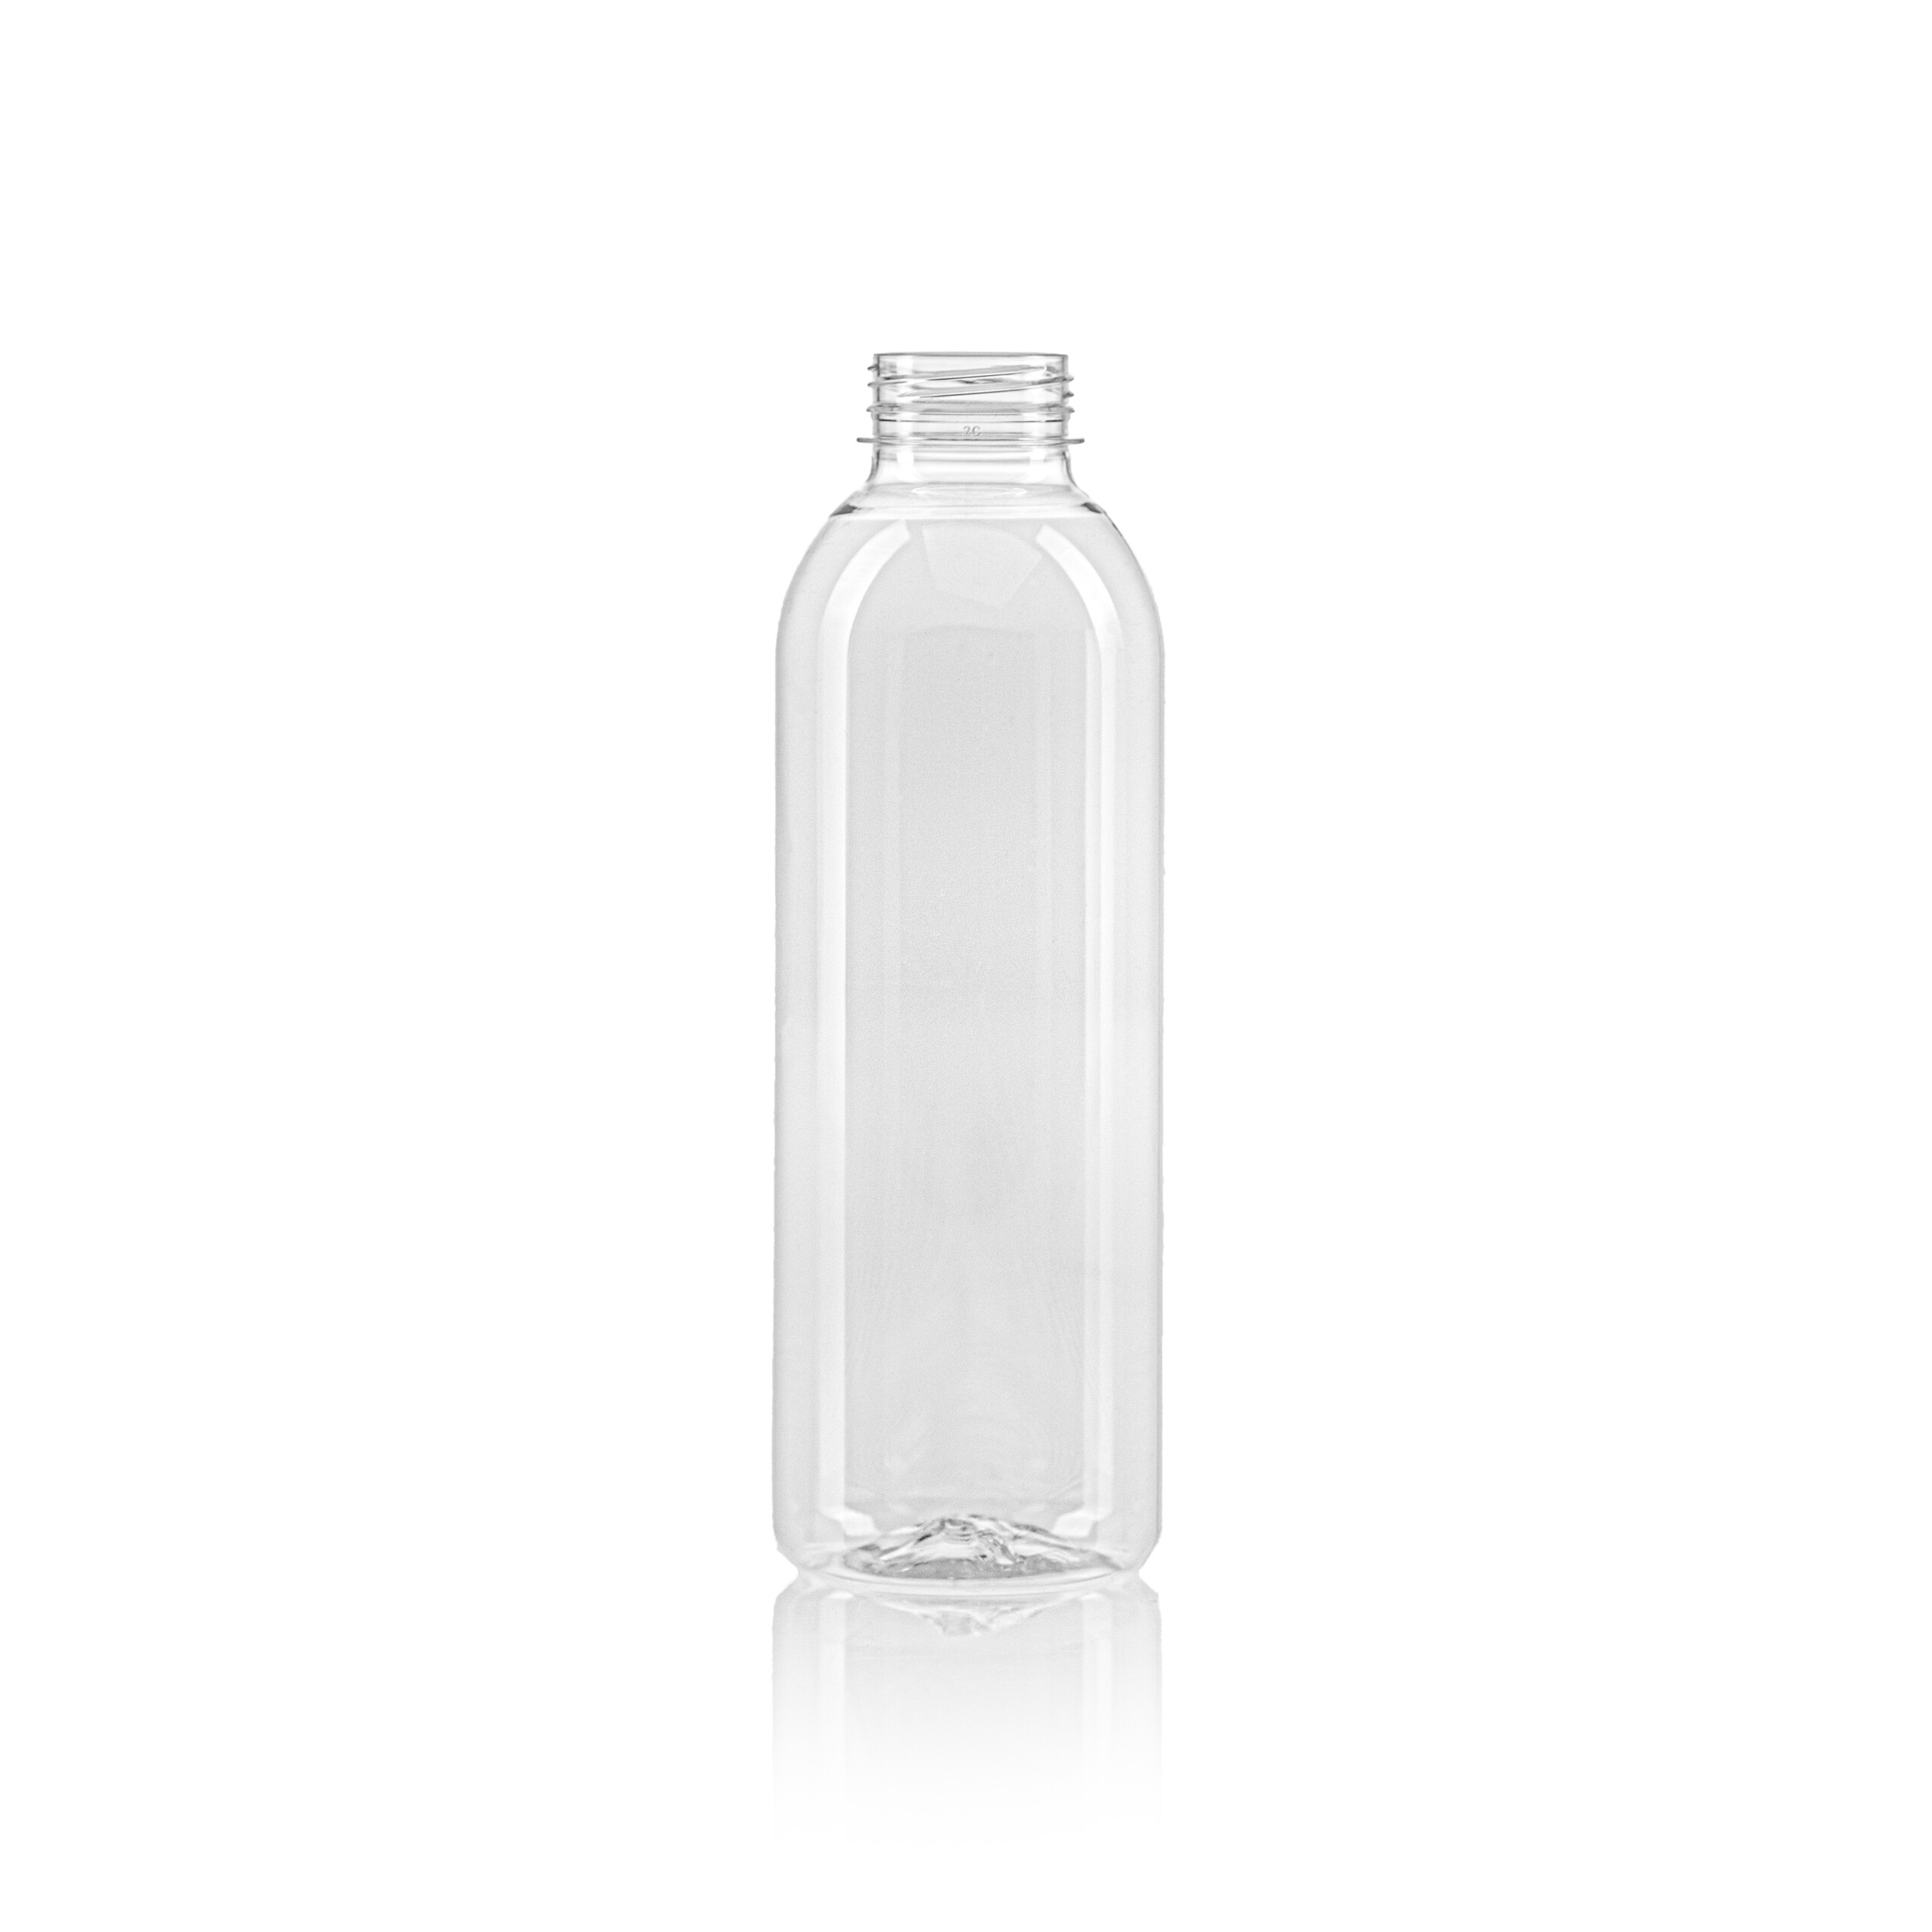 PET juice bottle round 750ml scaled 27